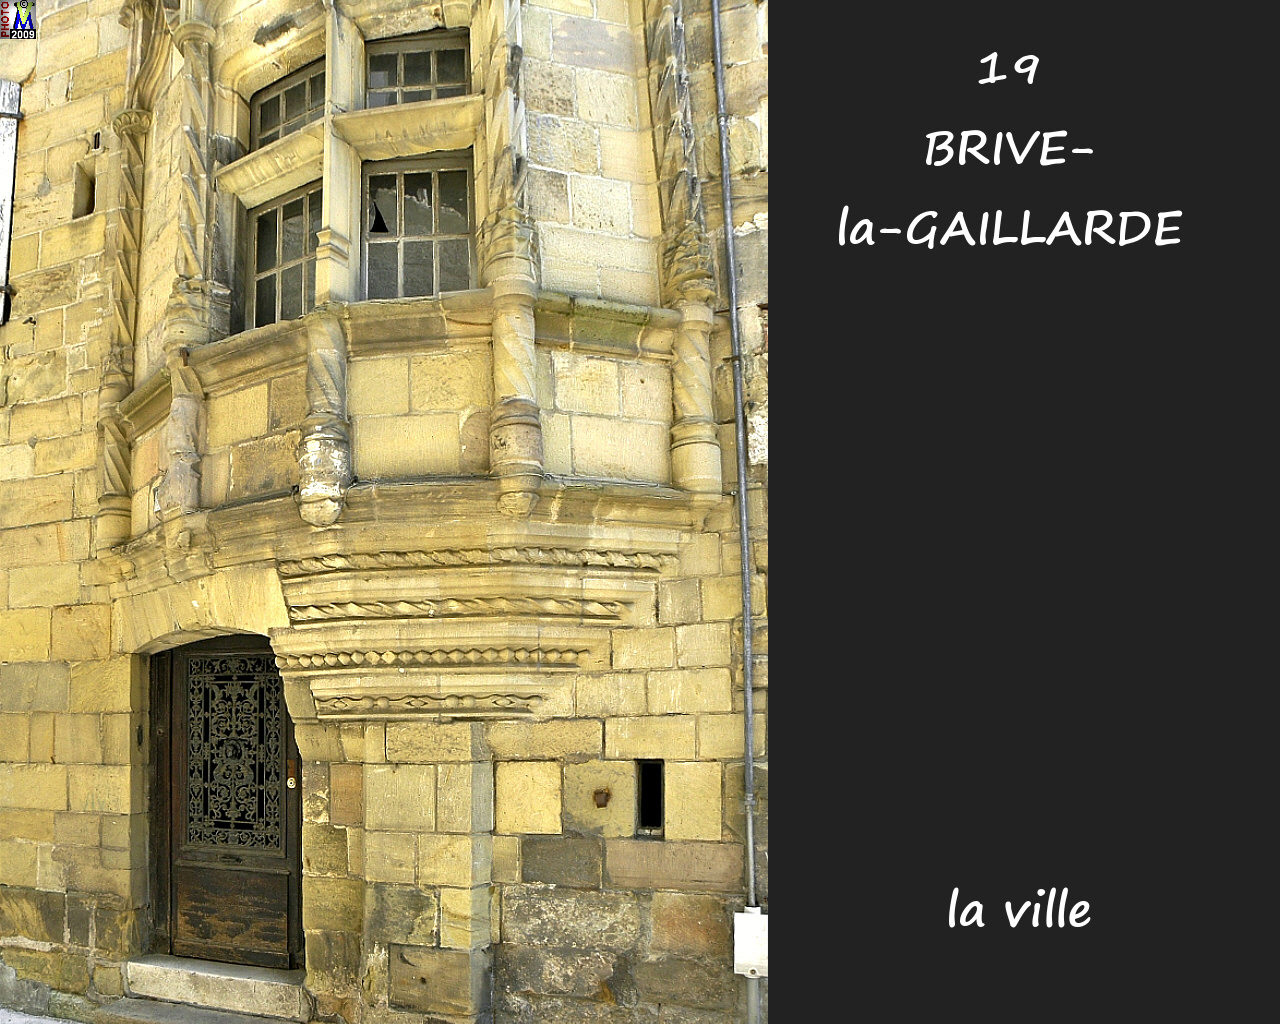 19BRIVE-GAILLARDE_ville_186.jpg